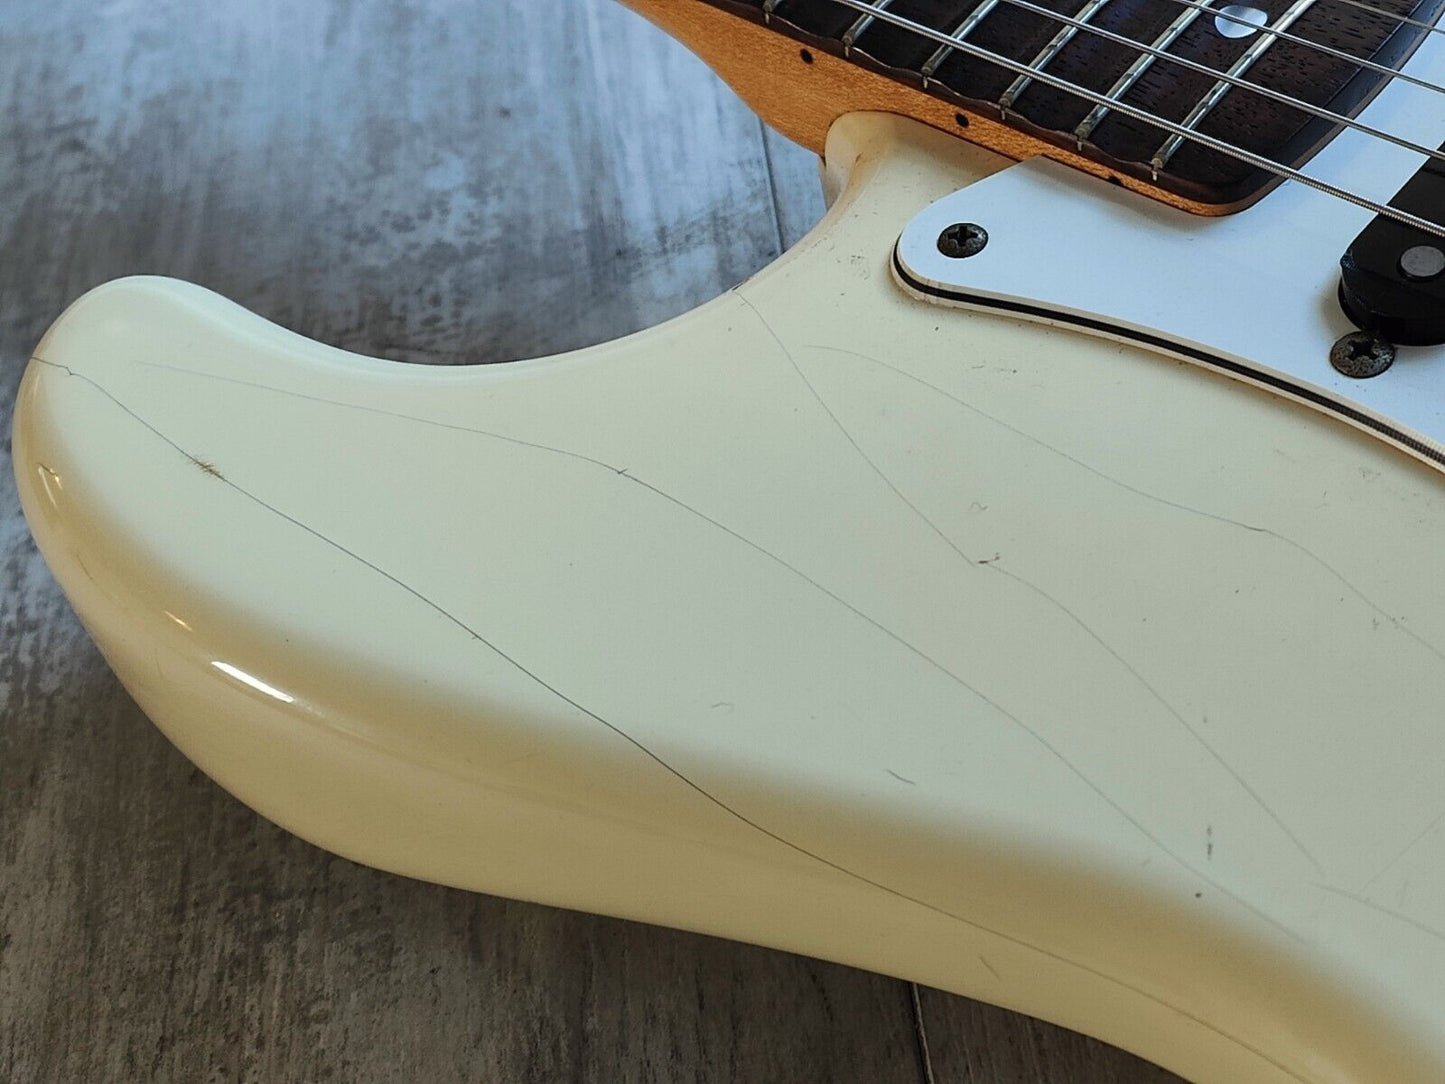 1989 Fender Japan ST72-65 '72 Reissue Blackmore Scalloped Stratocaster (White)